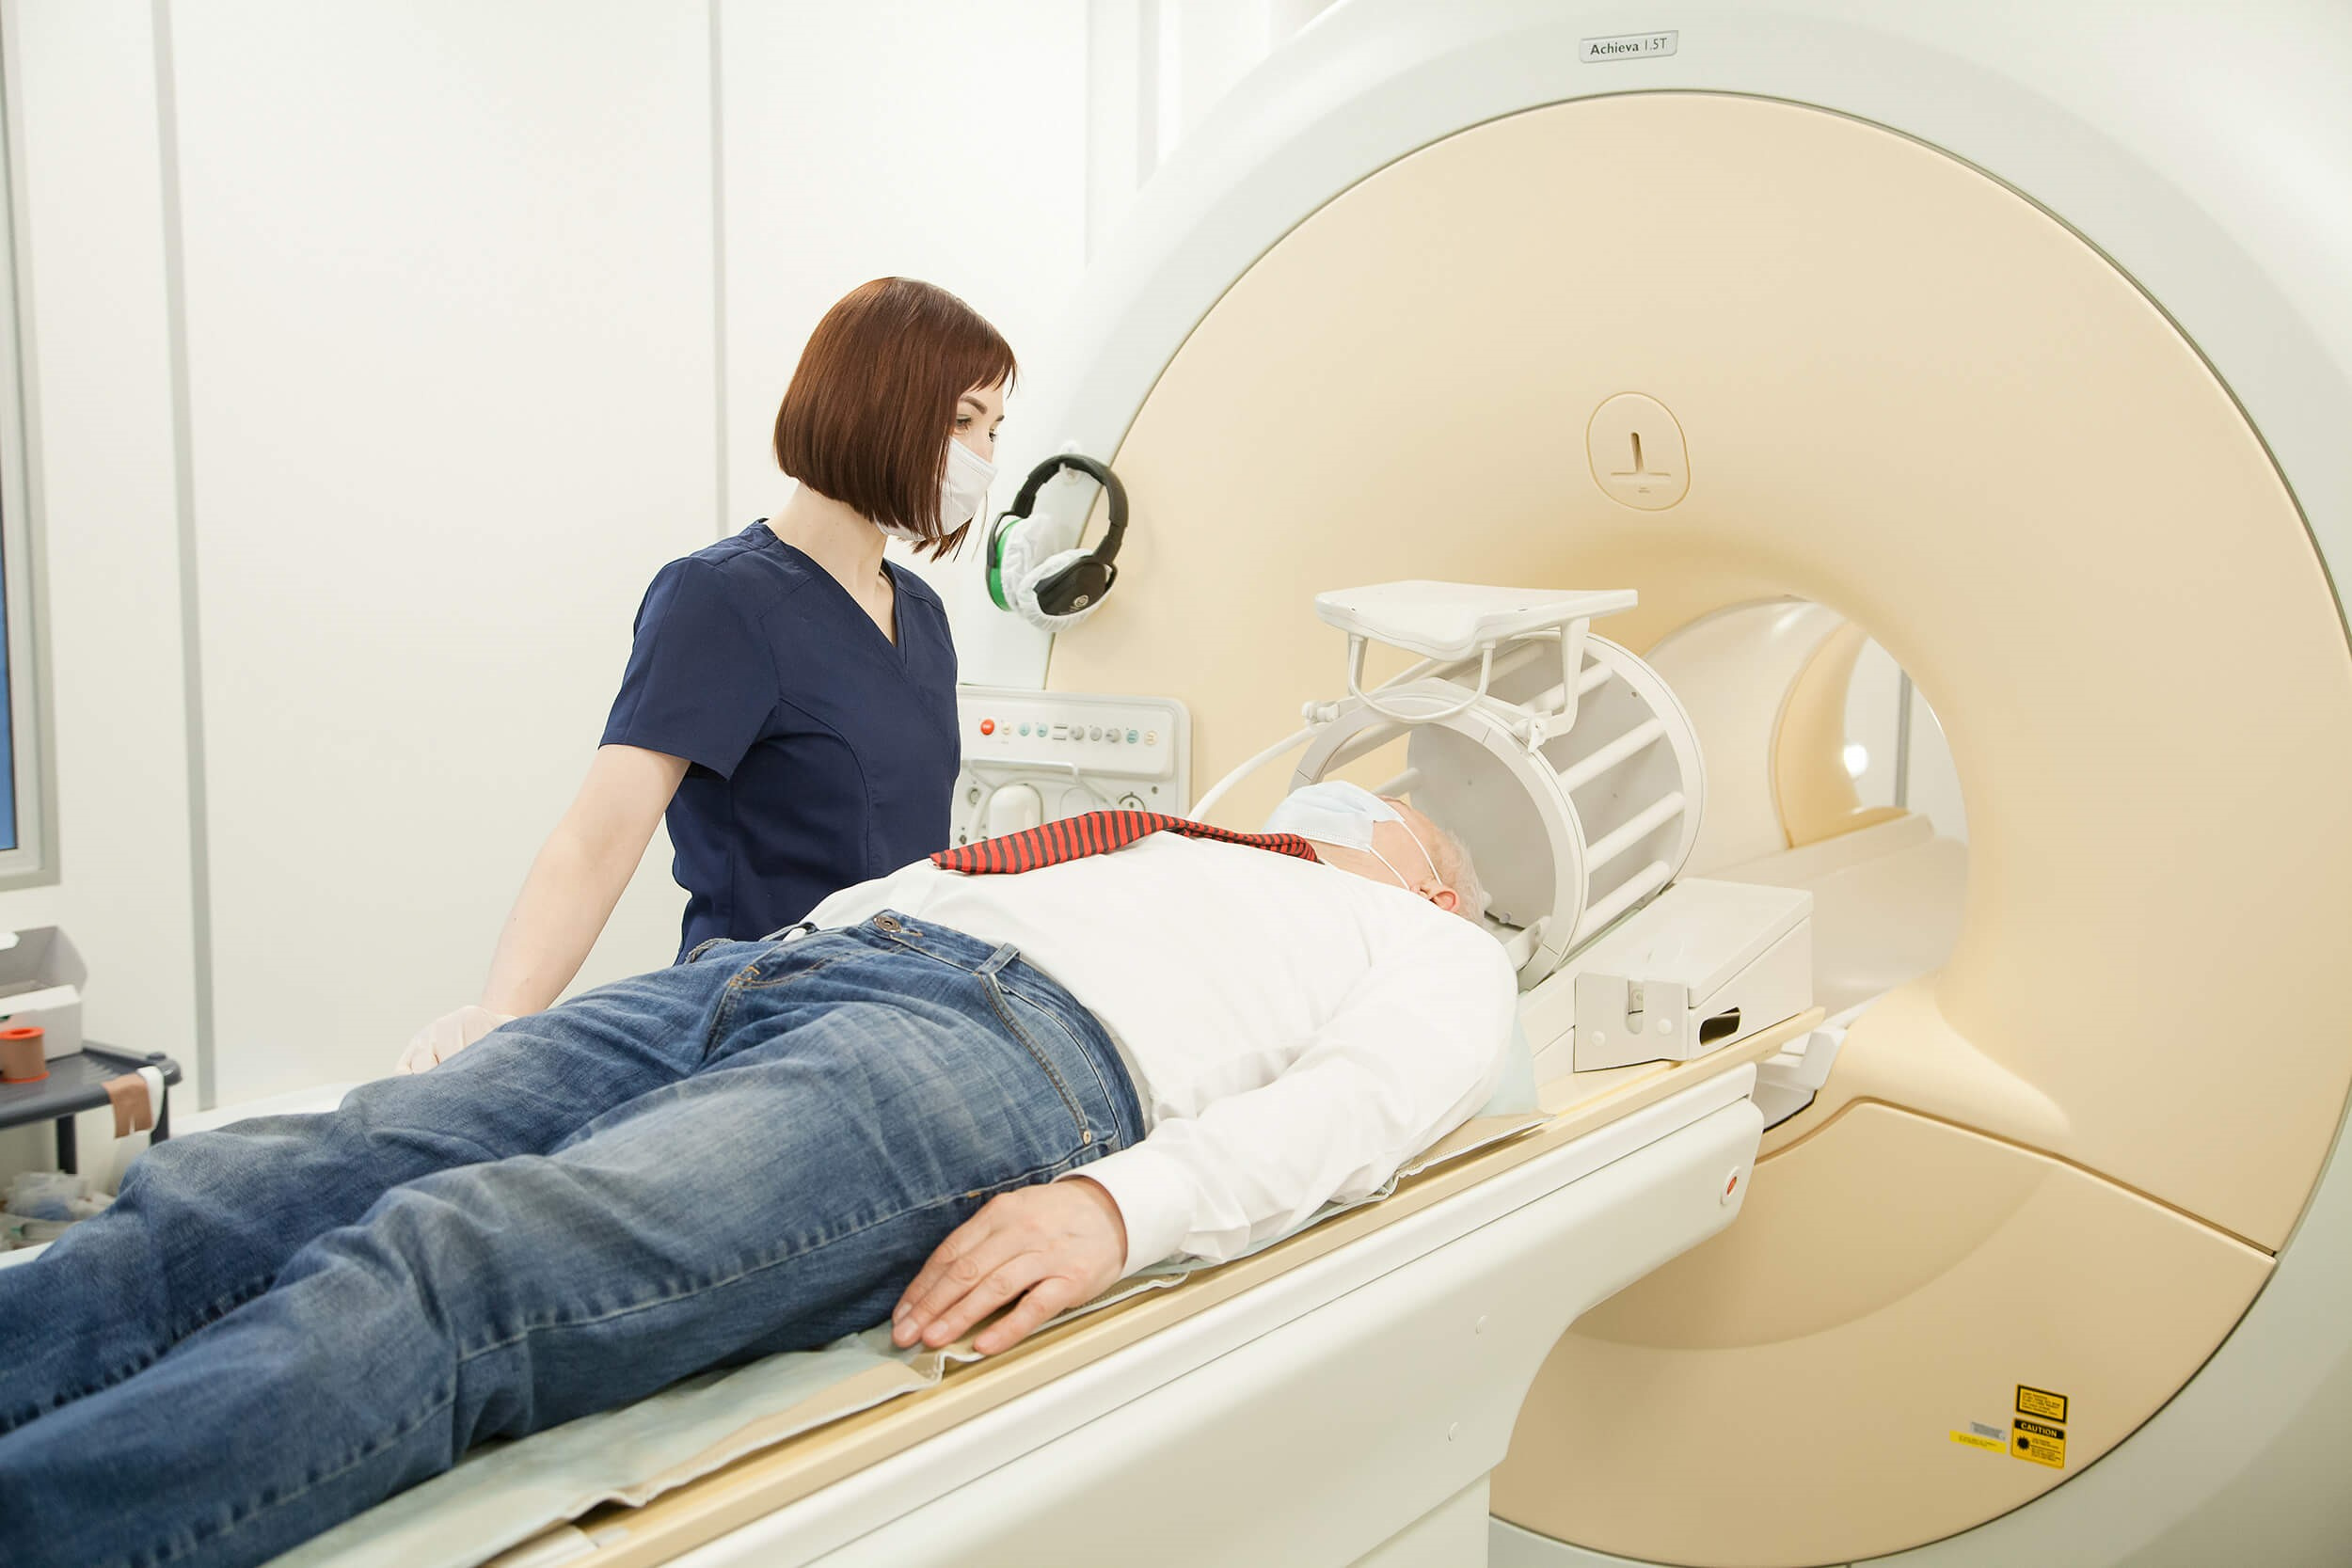 МРТ головного мозга длится в среднем 20 минут